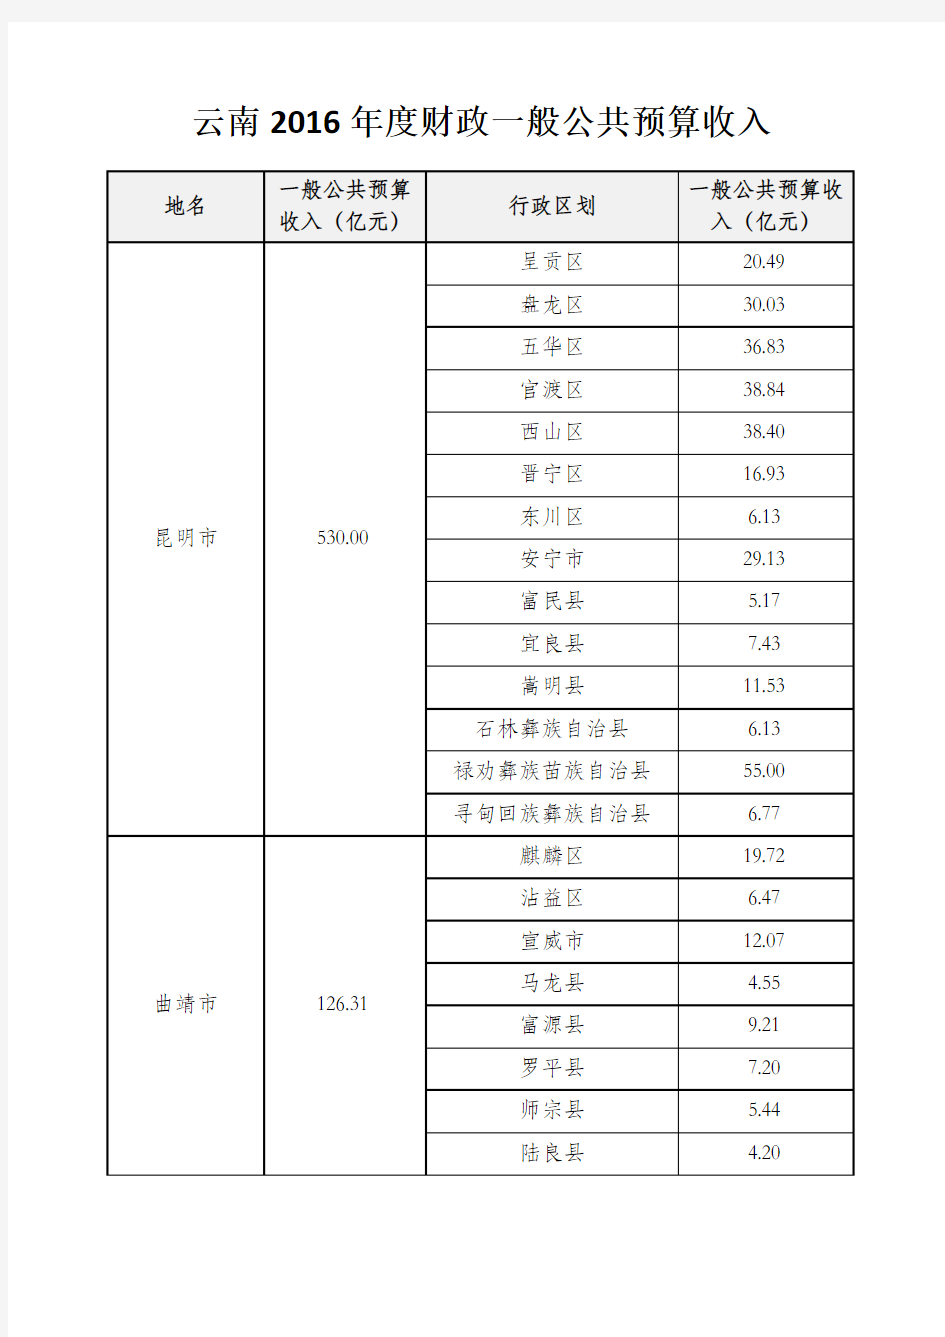 云南县级行政区2016年度一般公共预算收入